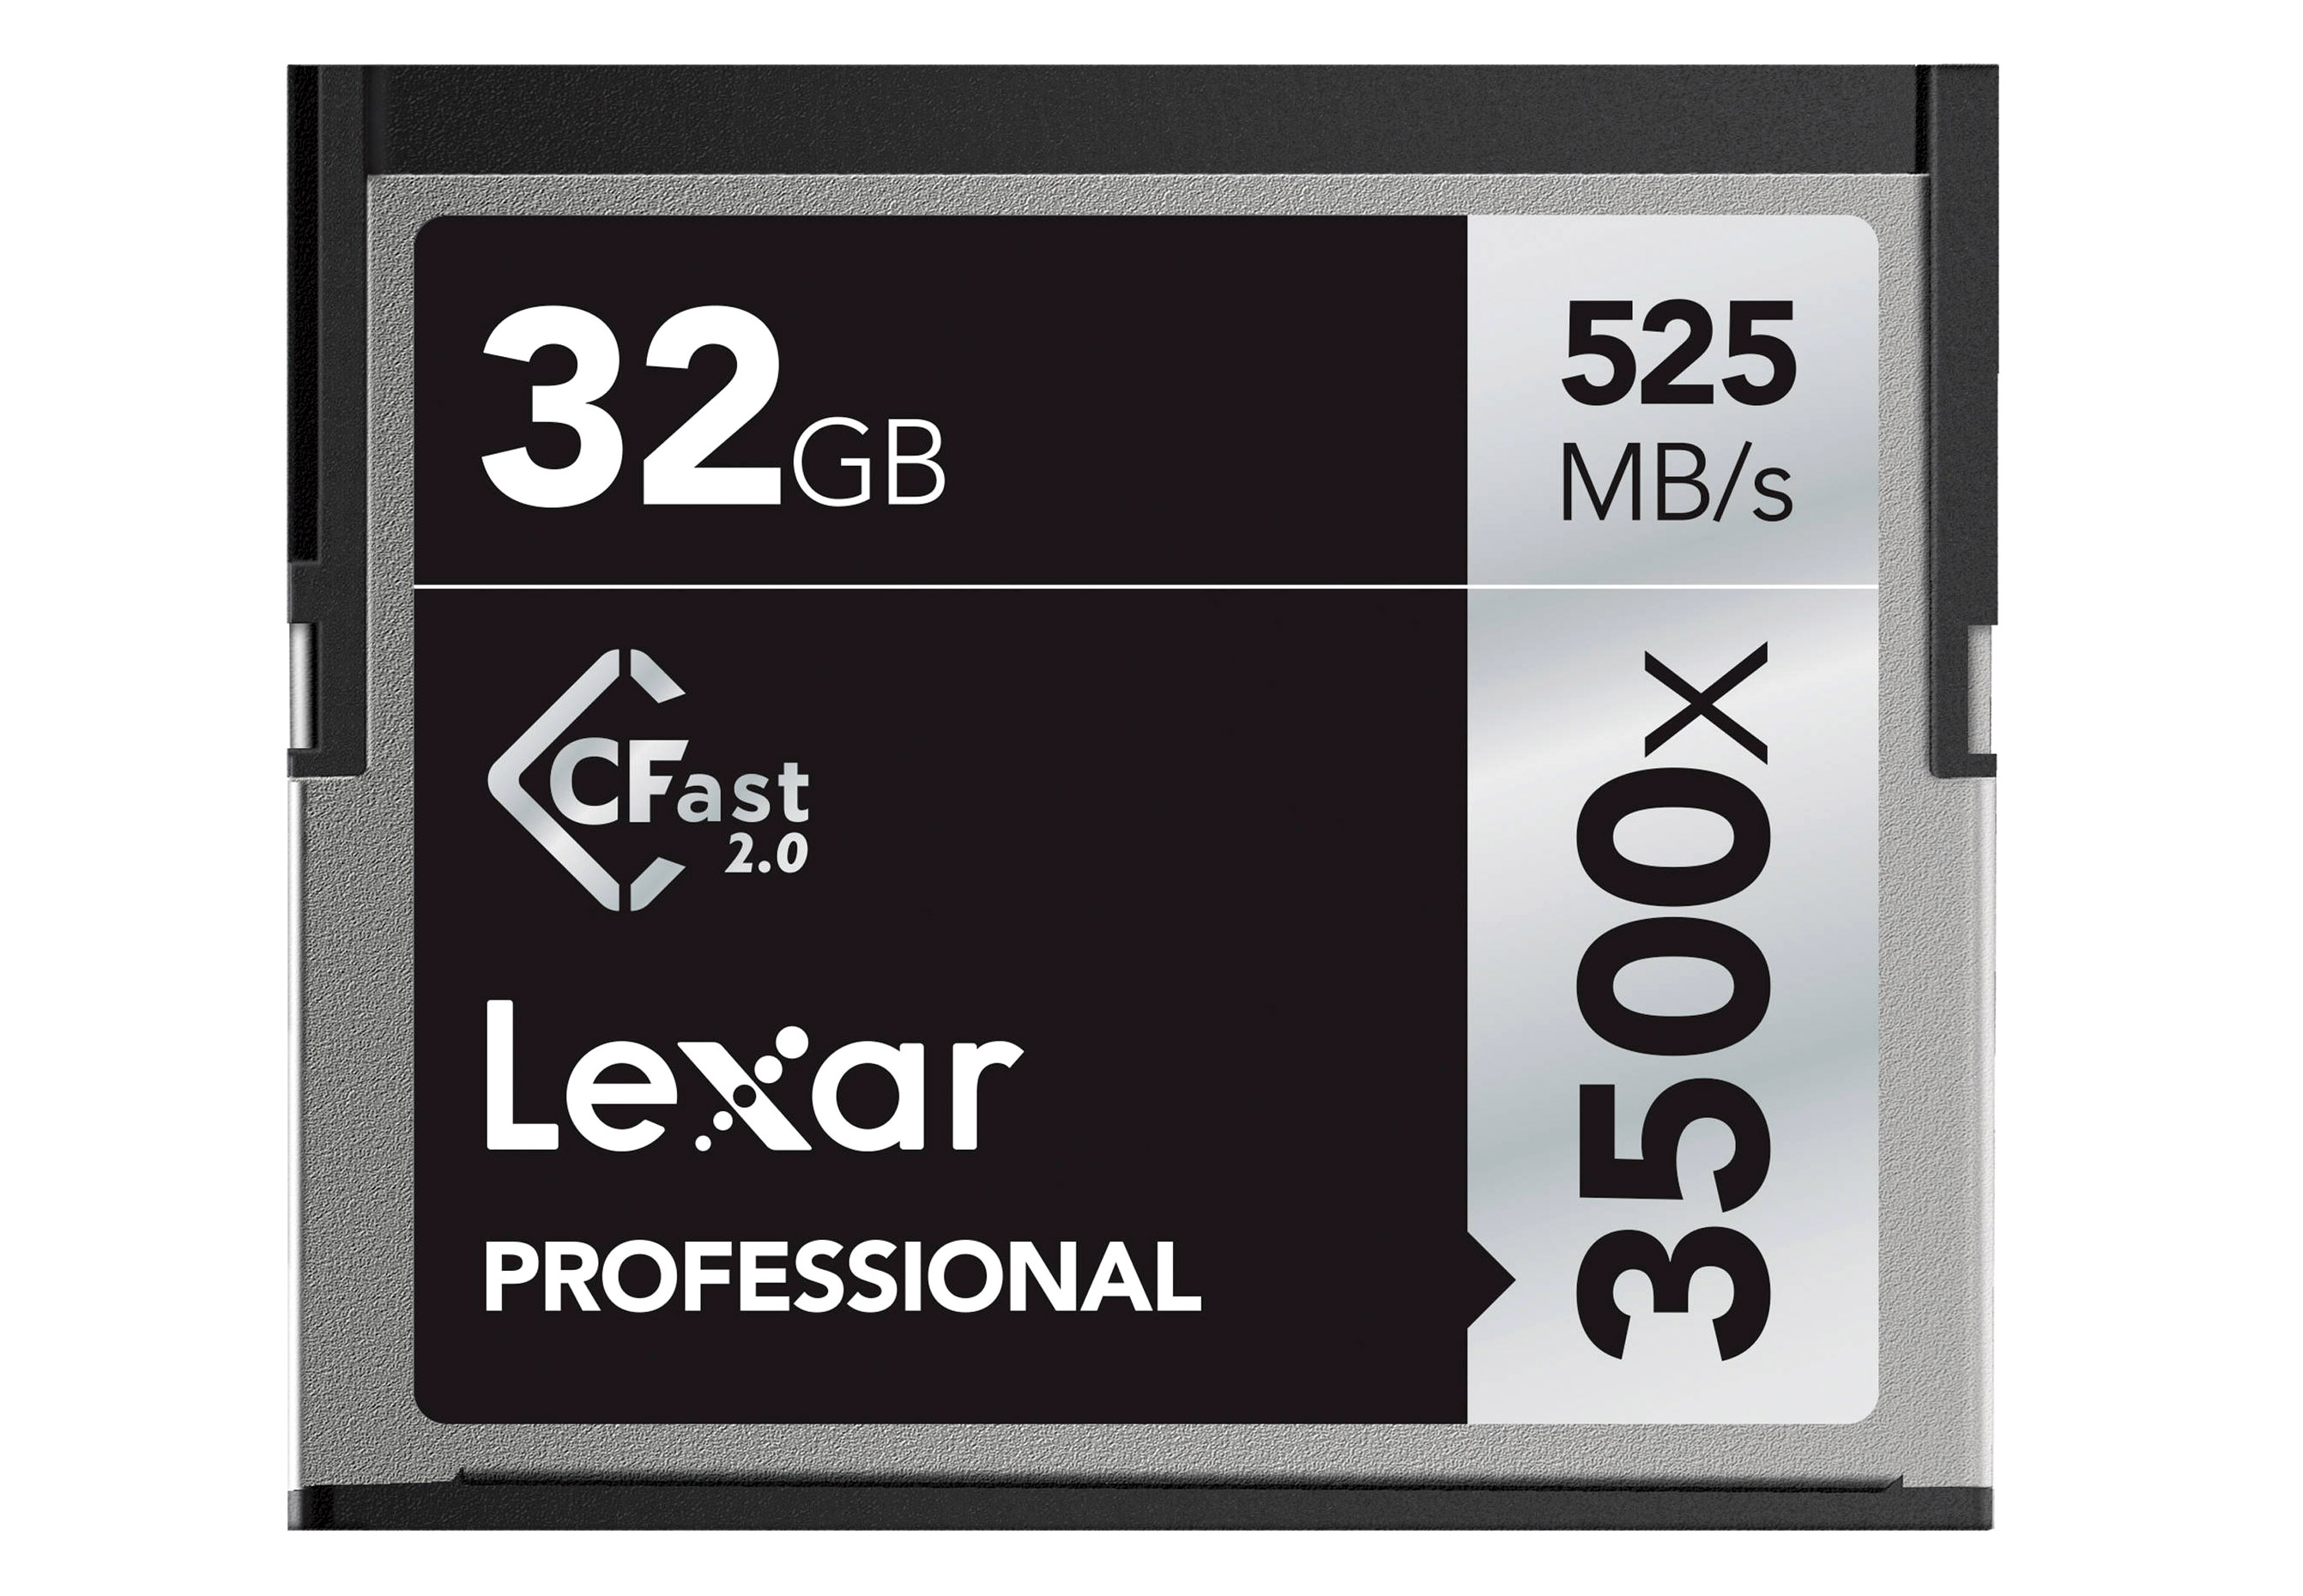 Lexar Professional CFast 32 GB 3500x (525 MB/s)